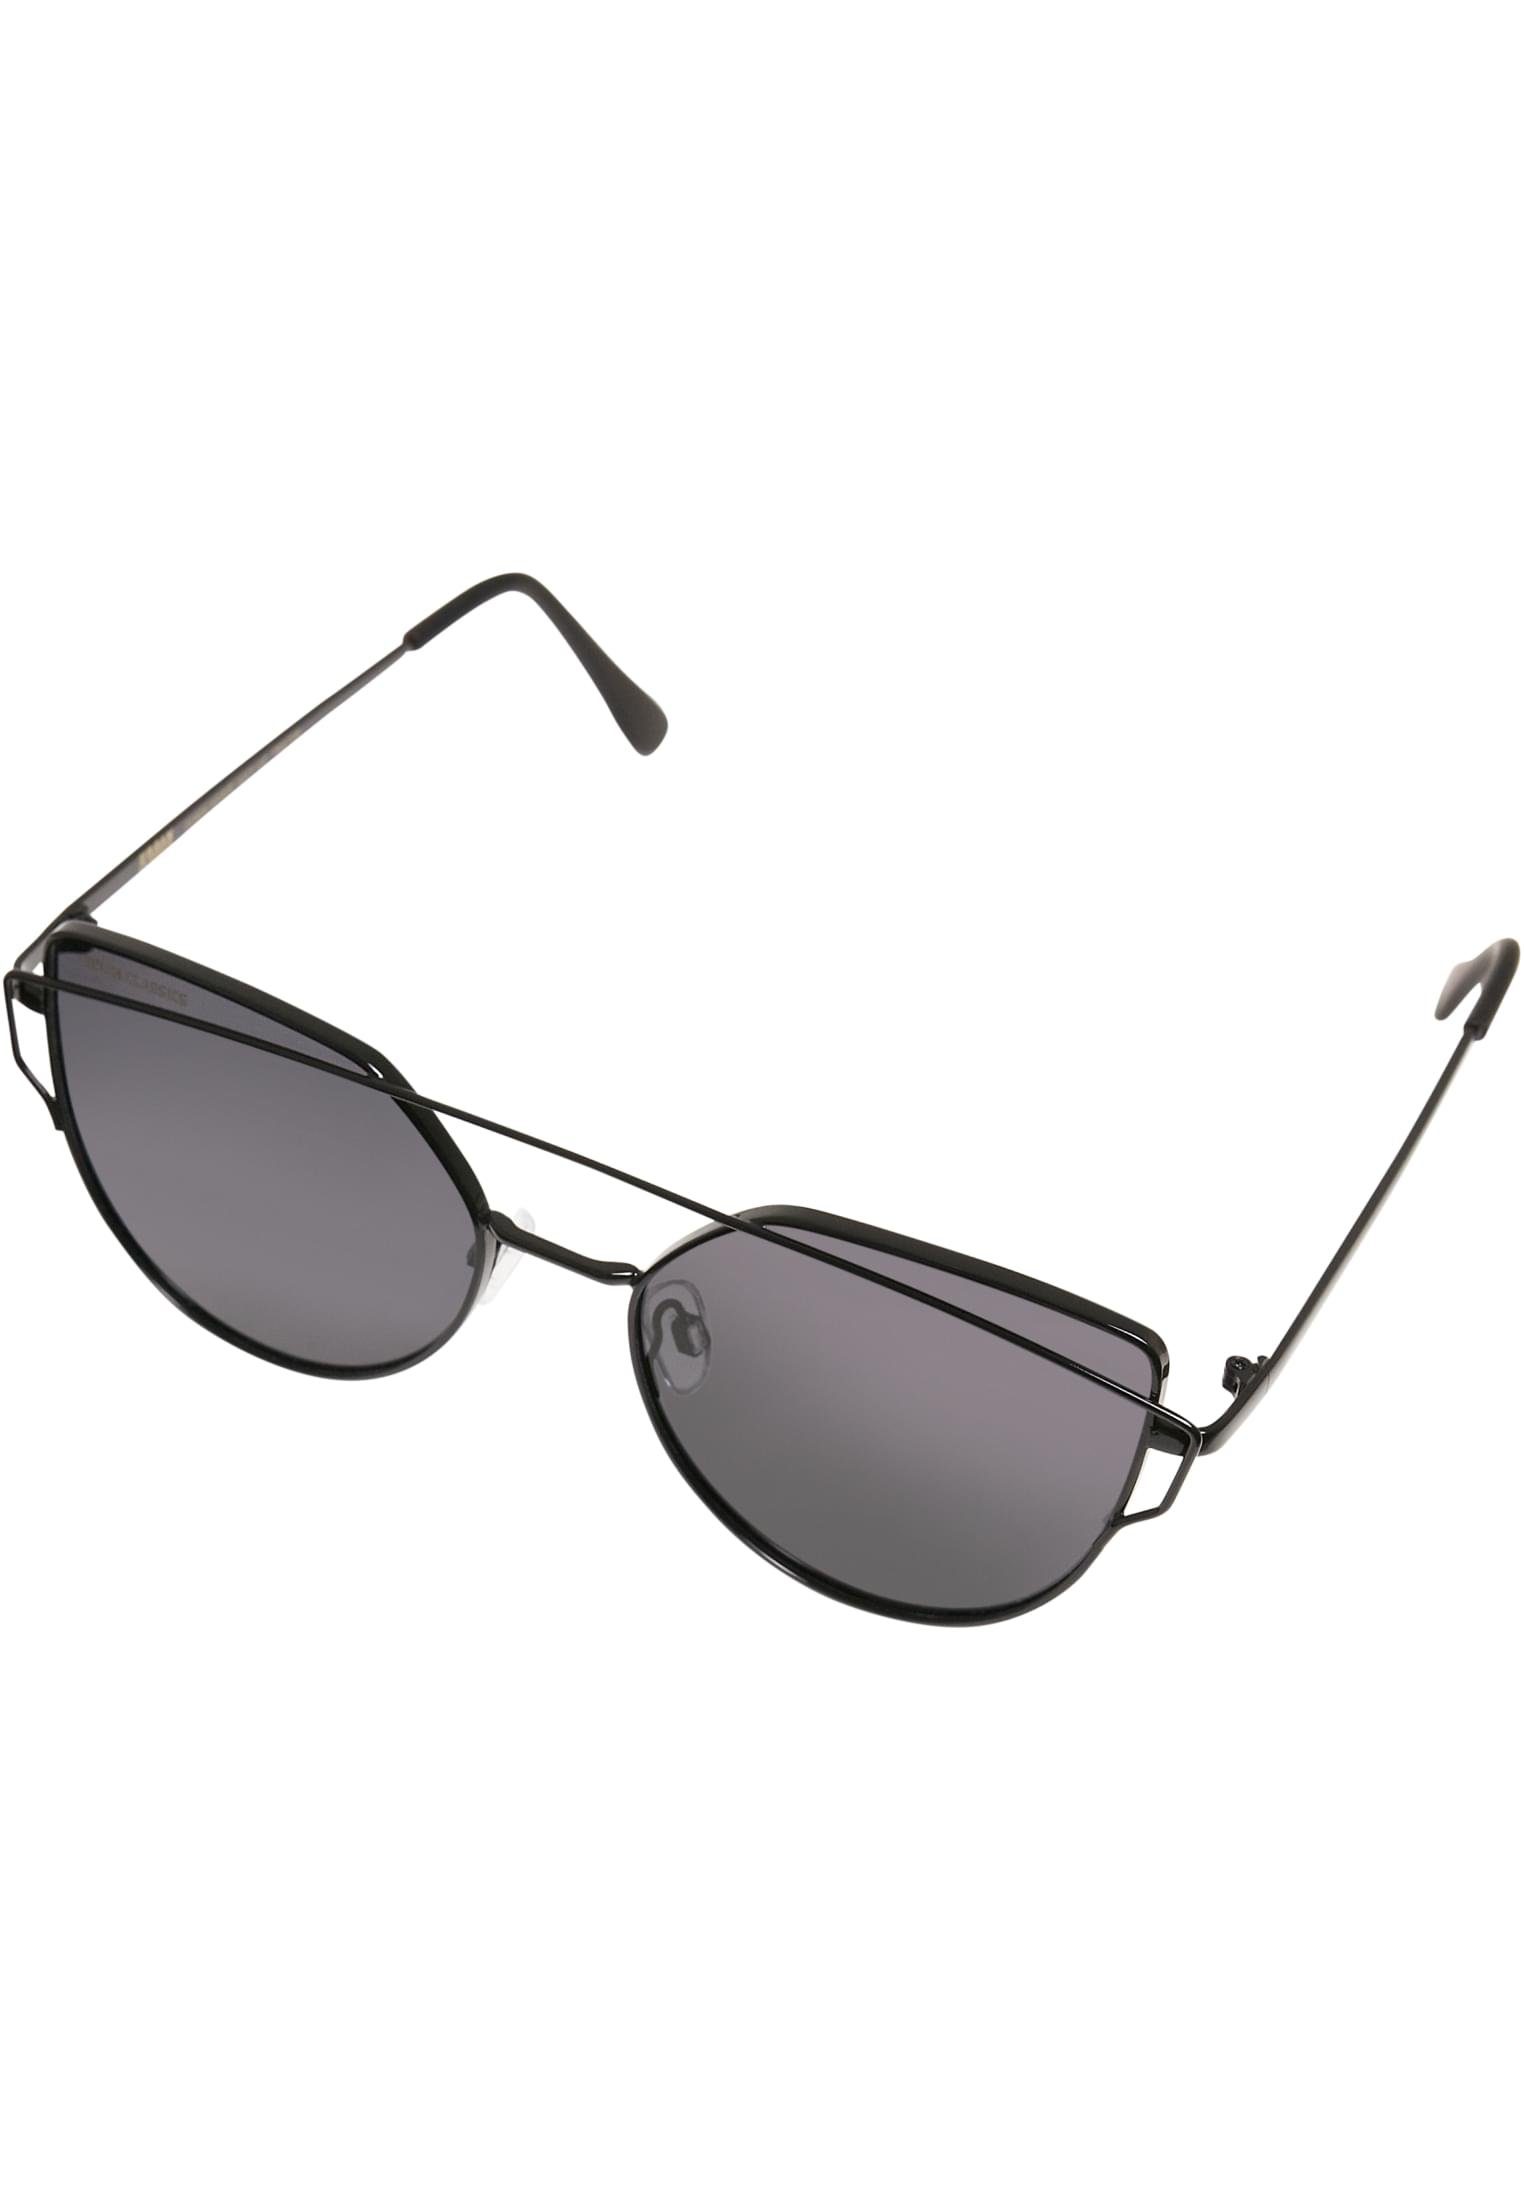 URBAN Sonnenbrille Accessoires July CLASSICS black UC Sunglasses